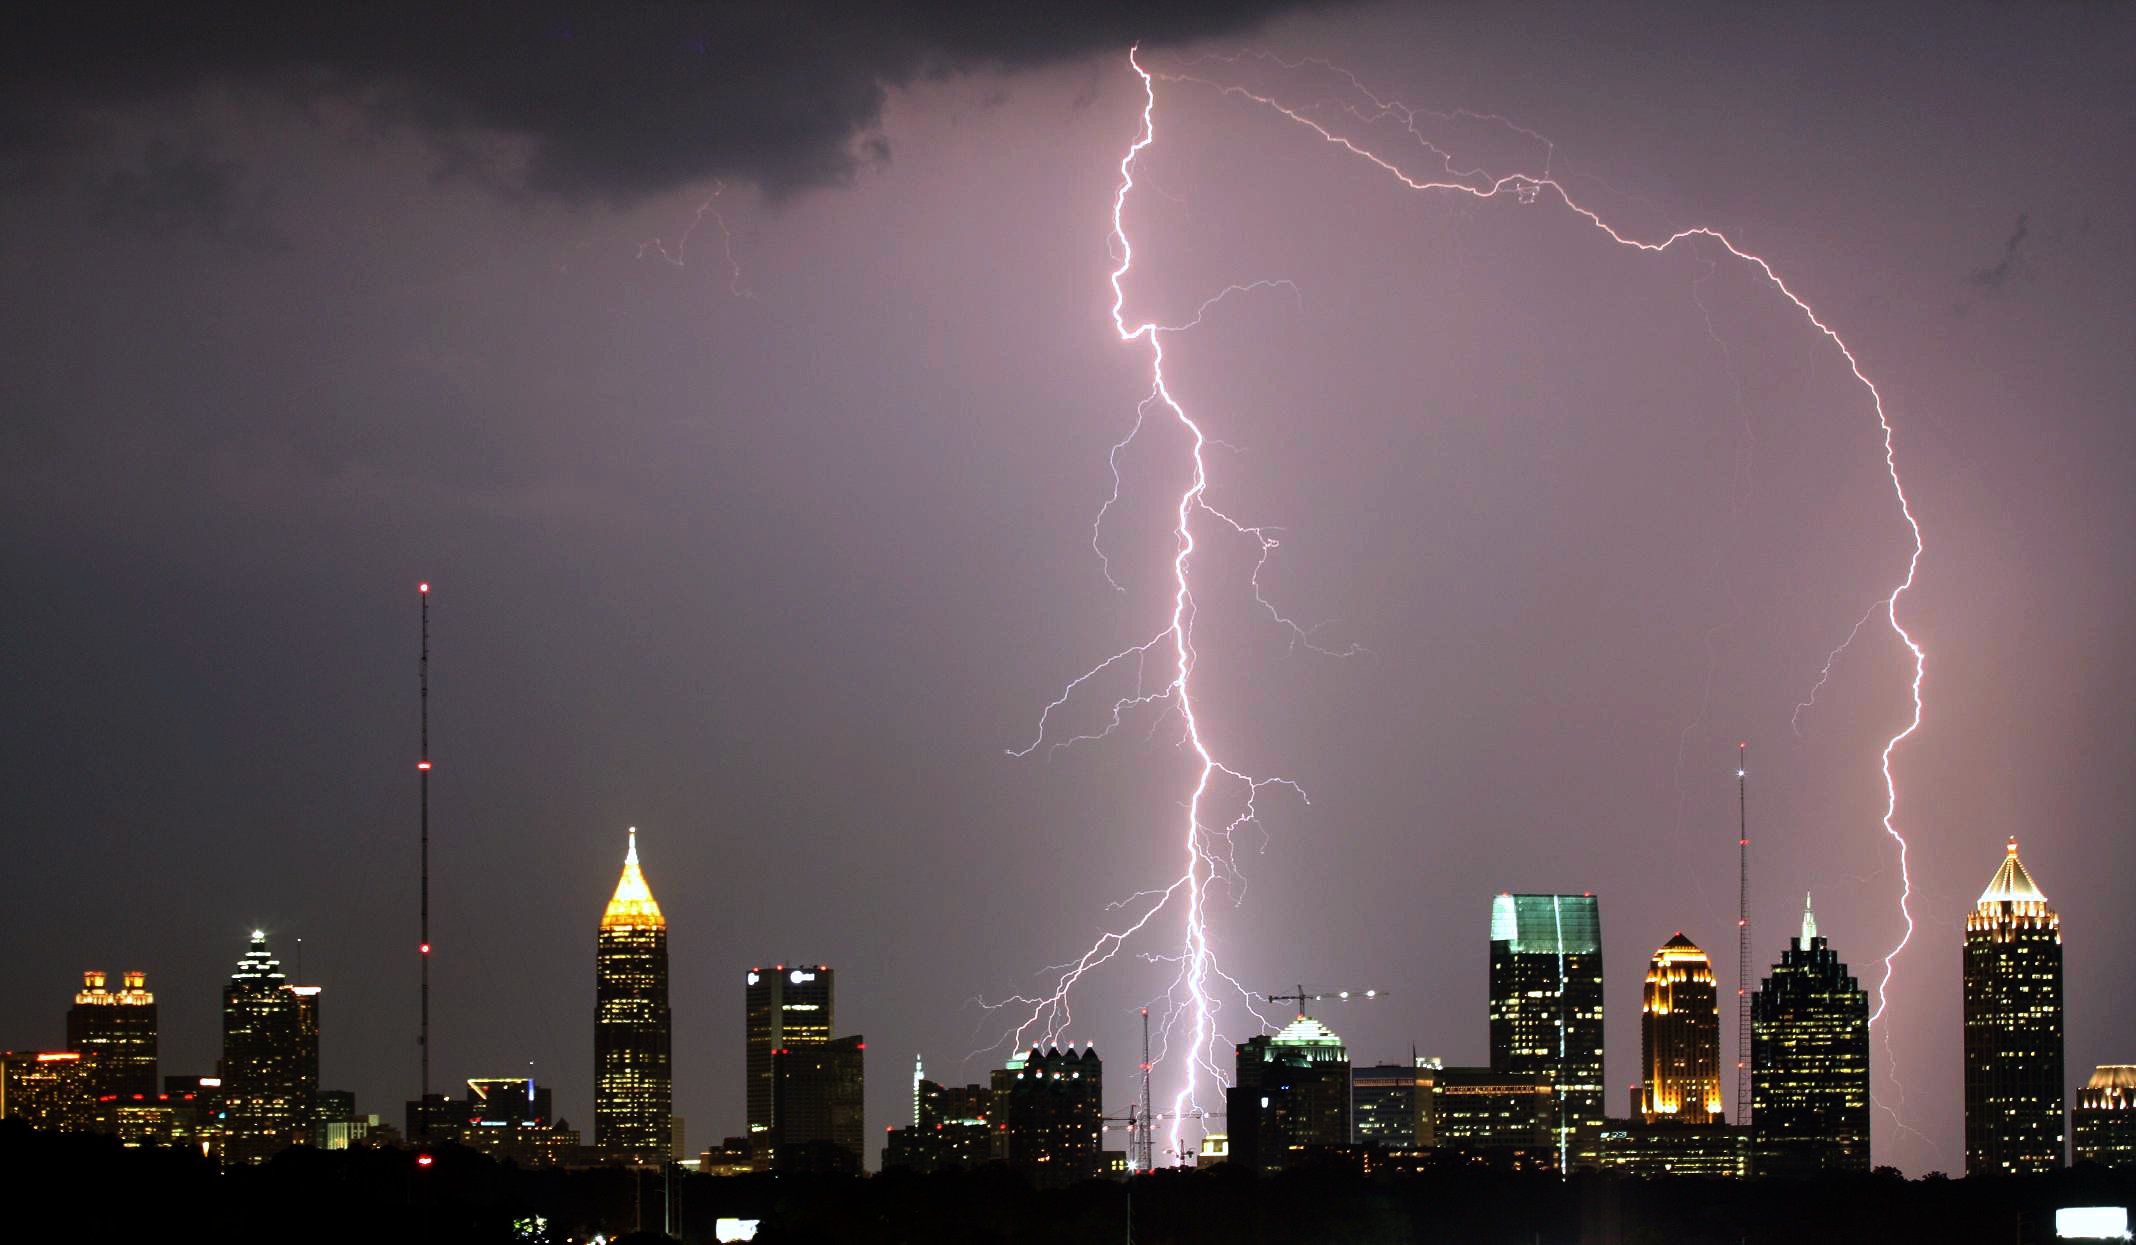 Atlanta lightning strike over city at night